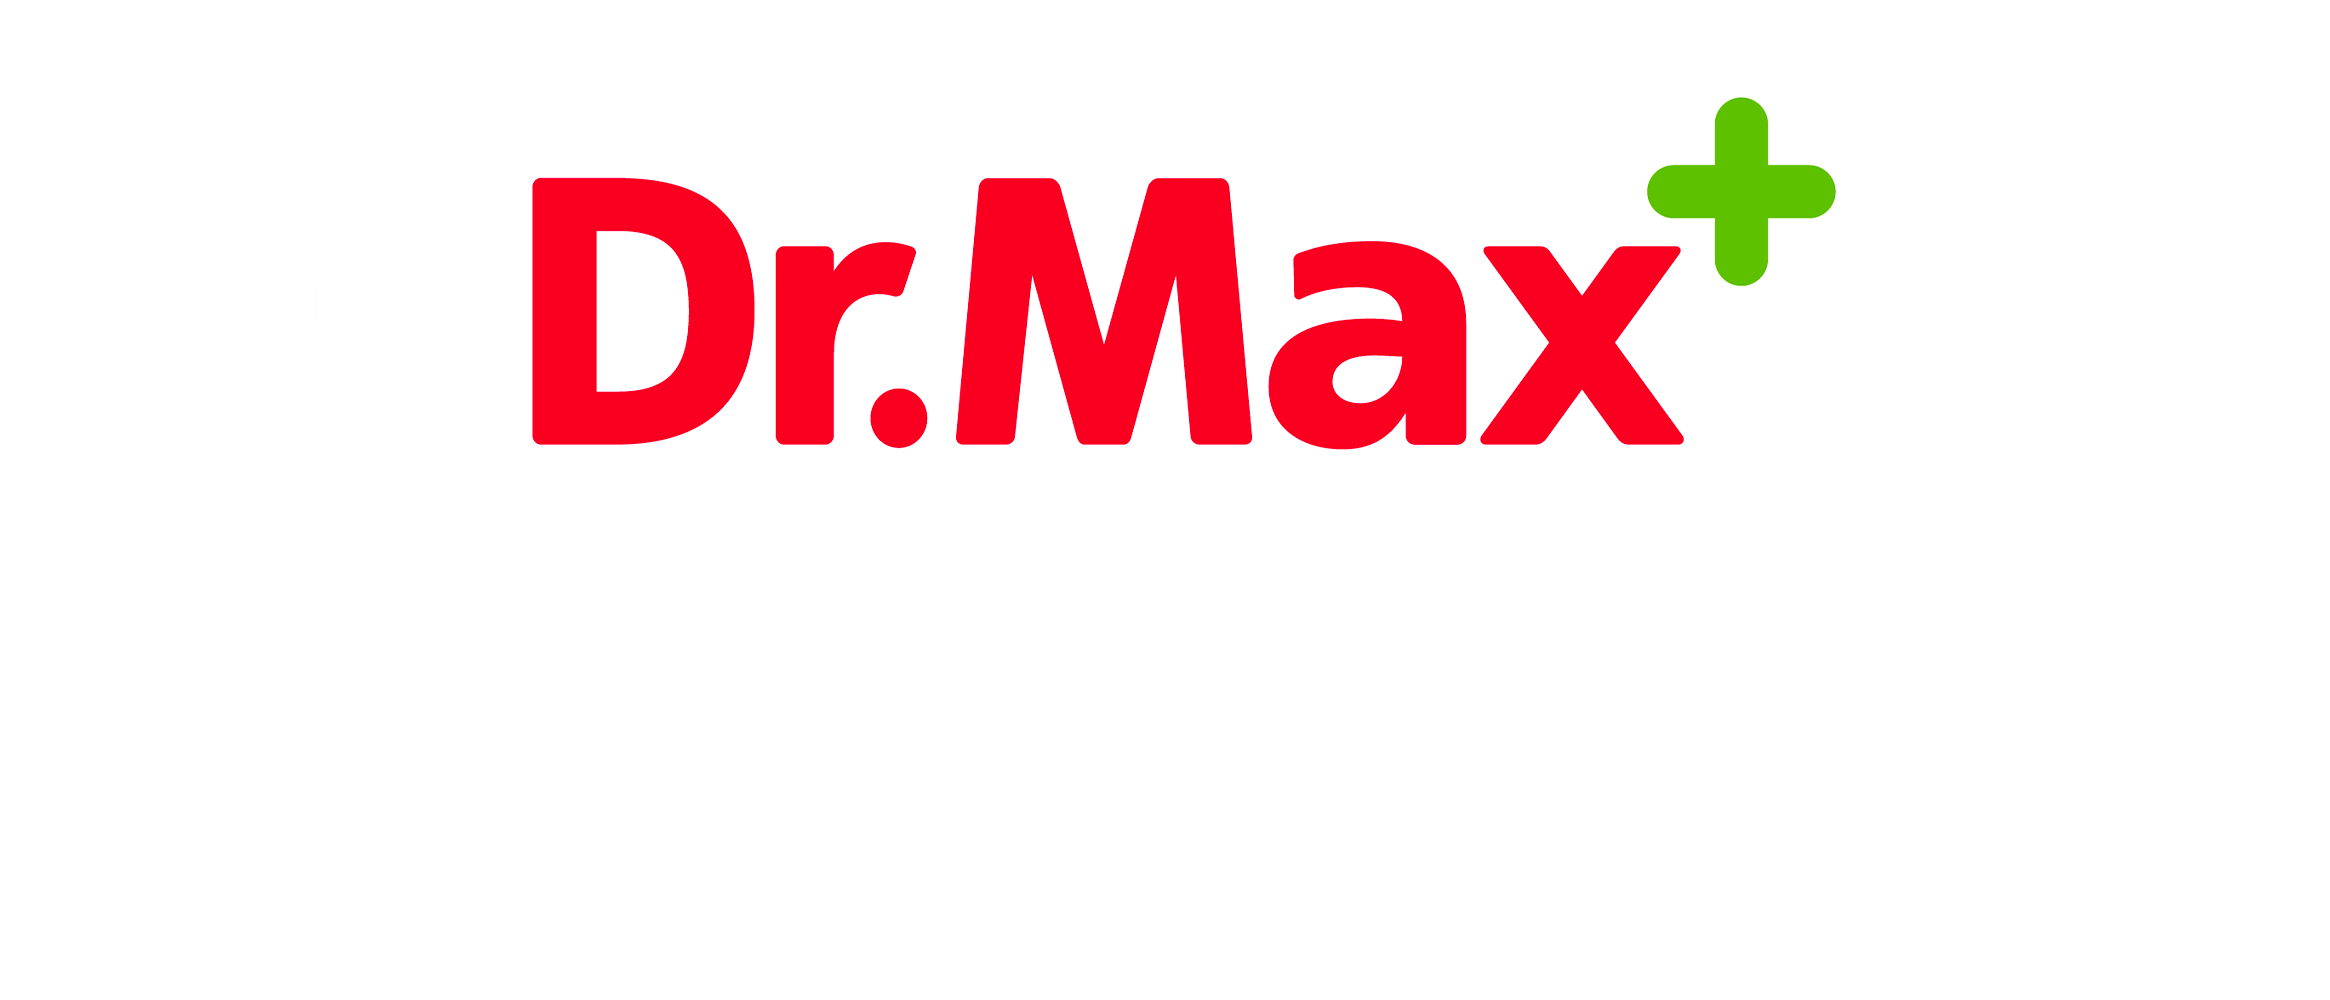 Drmax